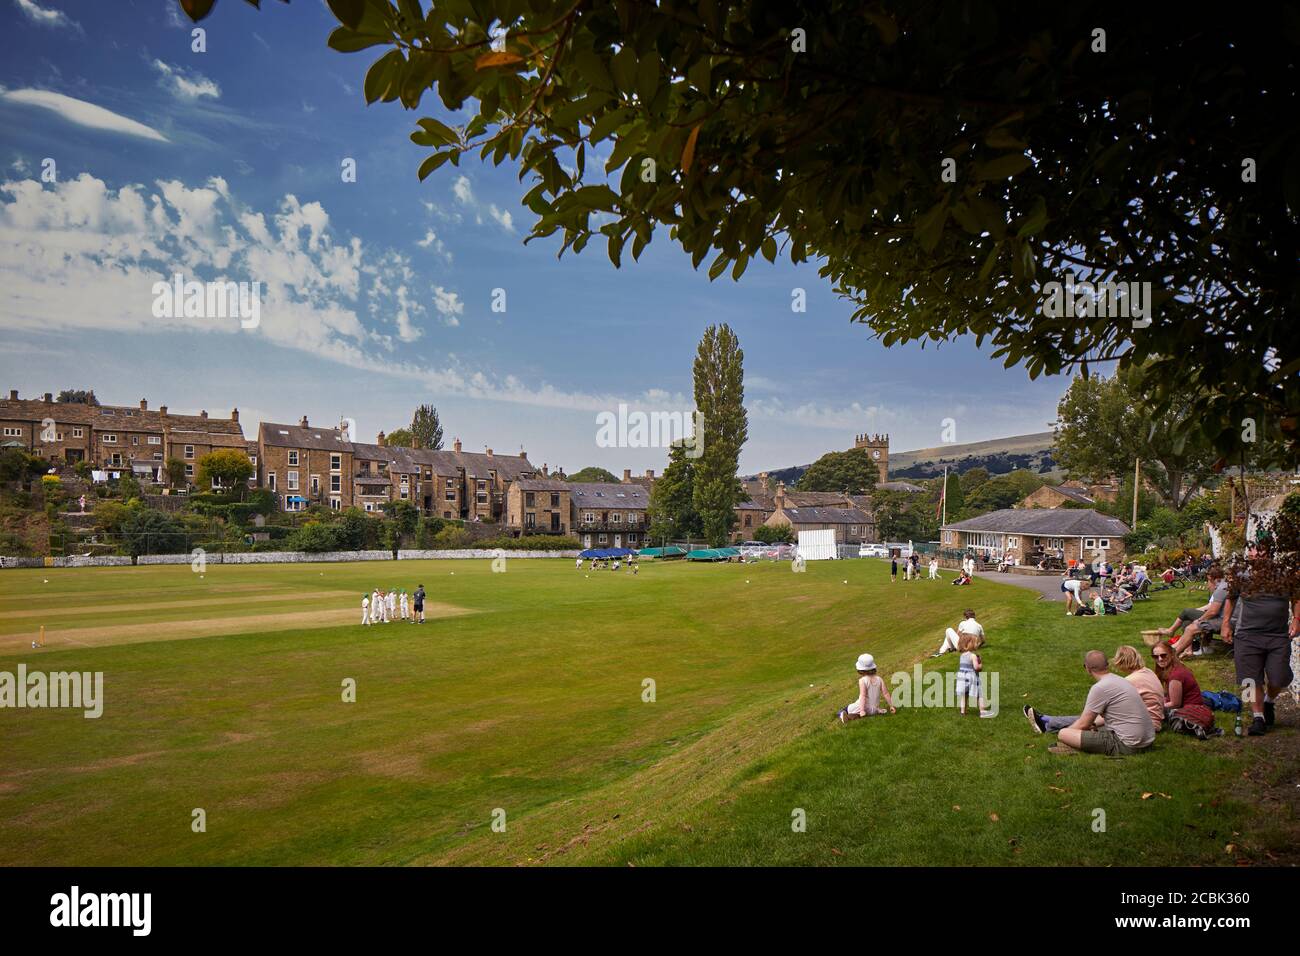 Hayfield village, High Peak, Derbyshire, village cricket ground Stock Photo